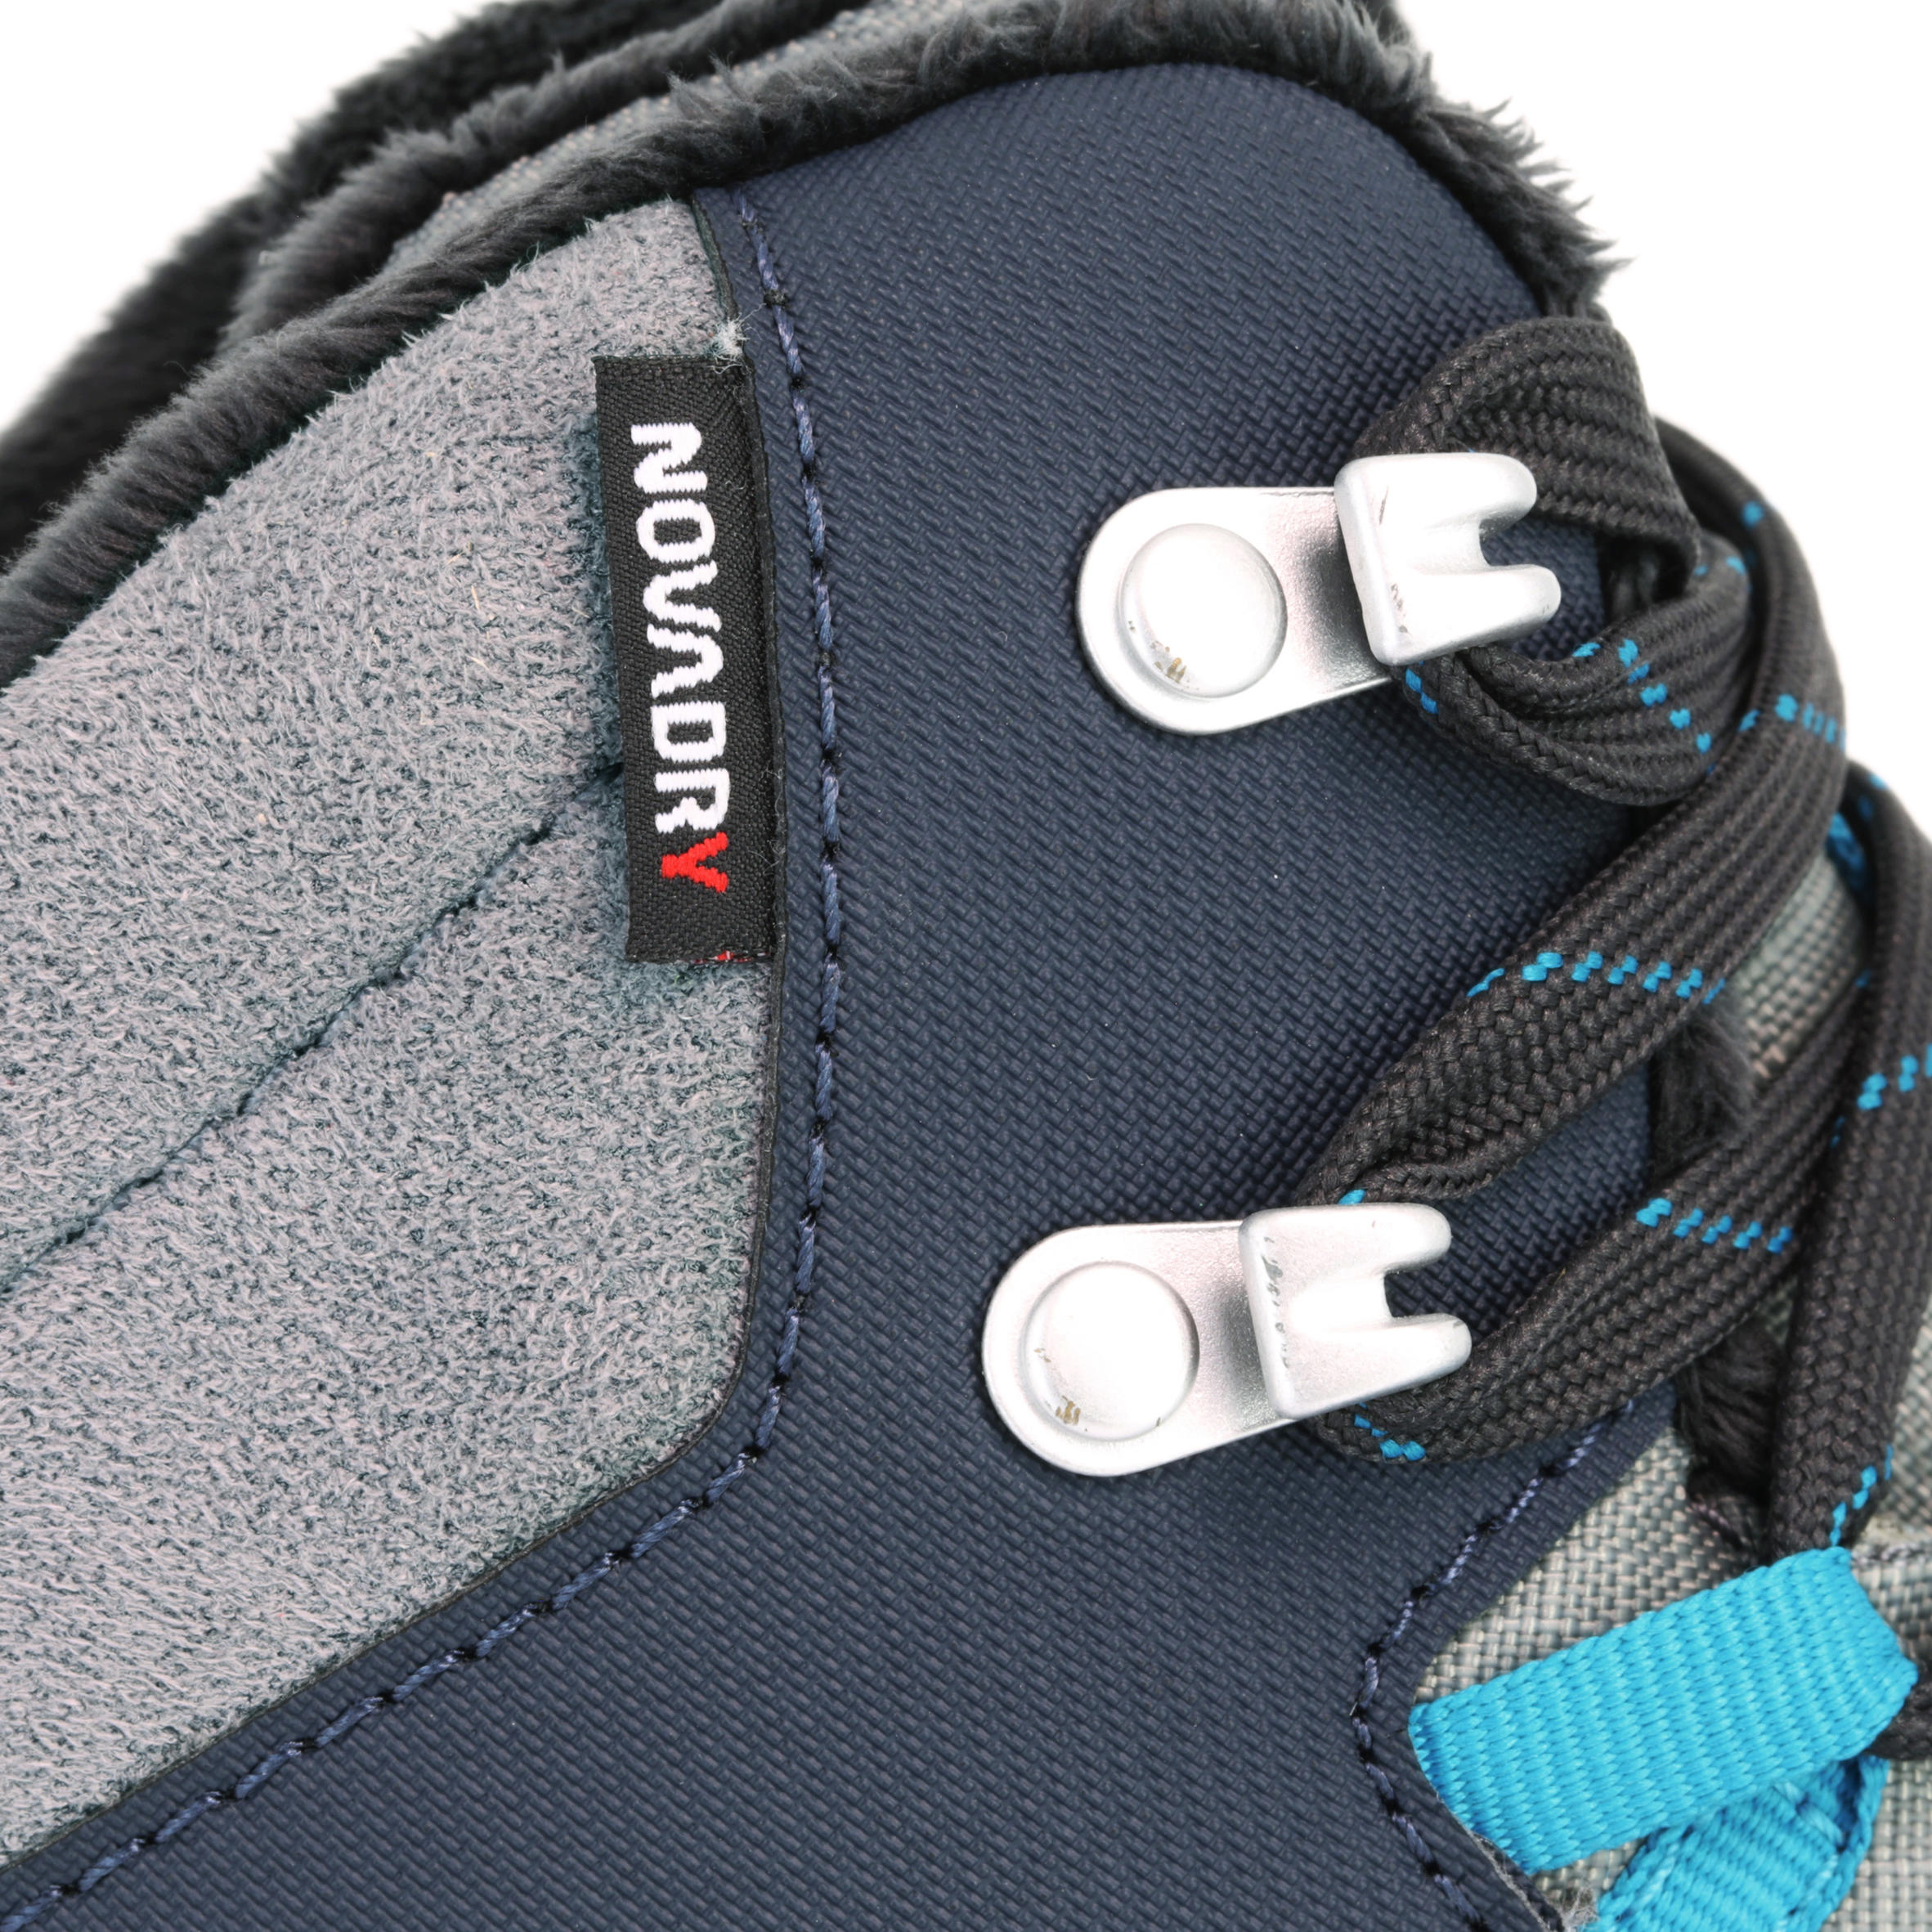 Forclaz 500 Warm Waterproof Men's Hiking Boots - Blue 3/15